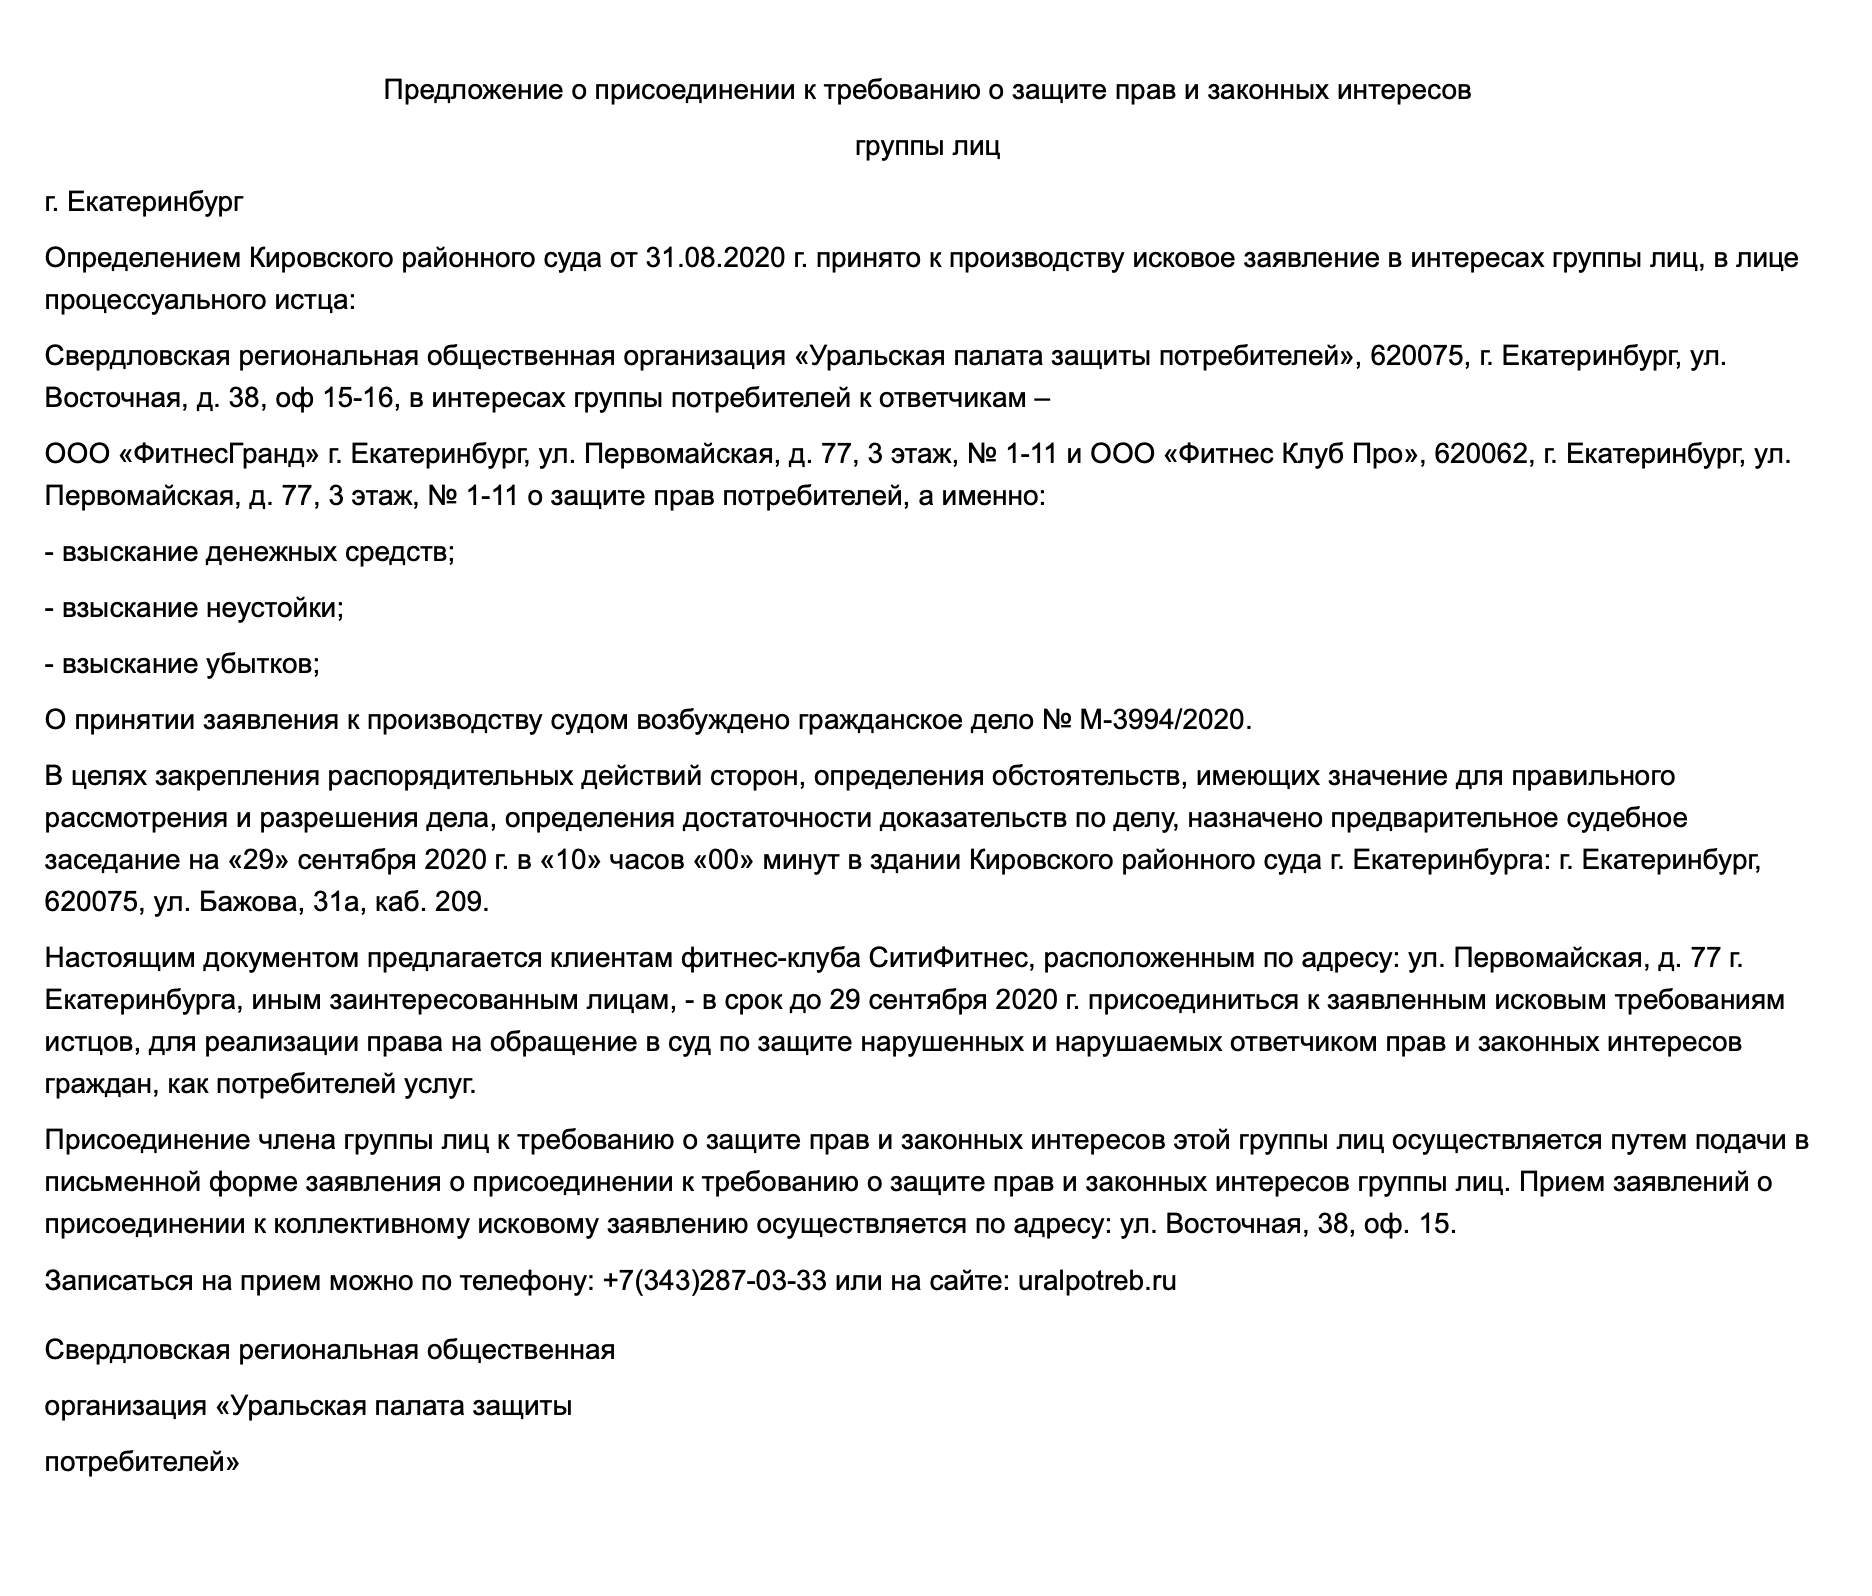 Предложение о присоединении к коллективному иску, которое опубликовал Кировский районный суд Екатеринбурга